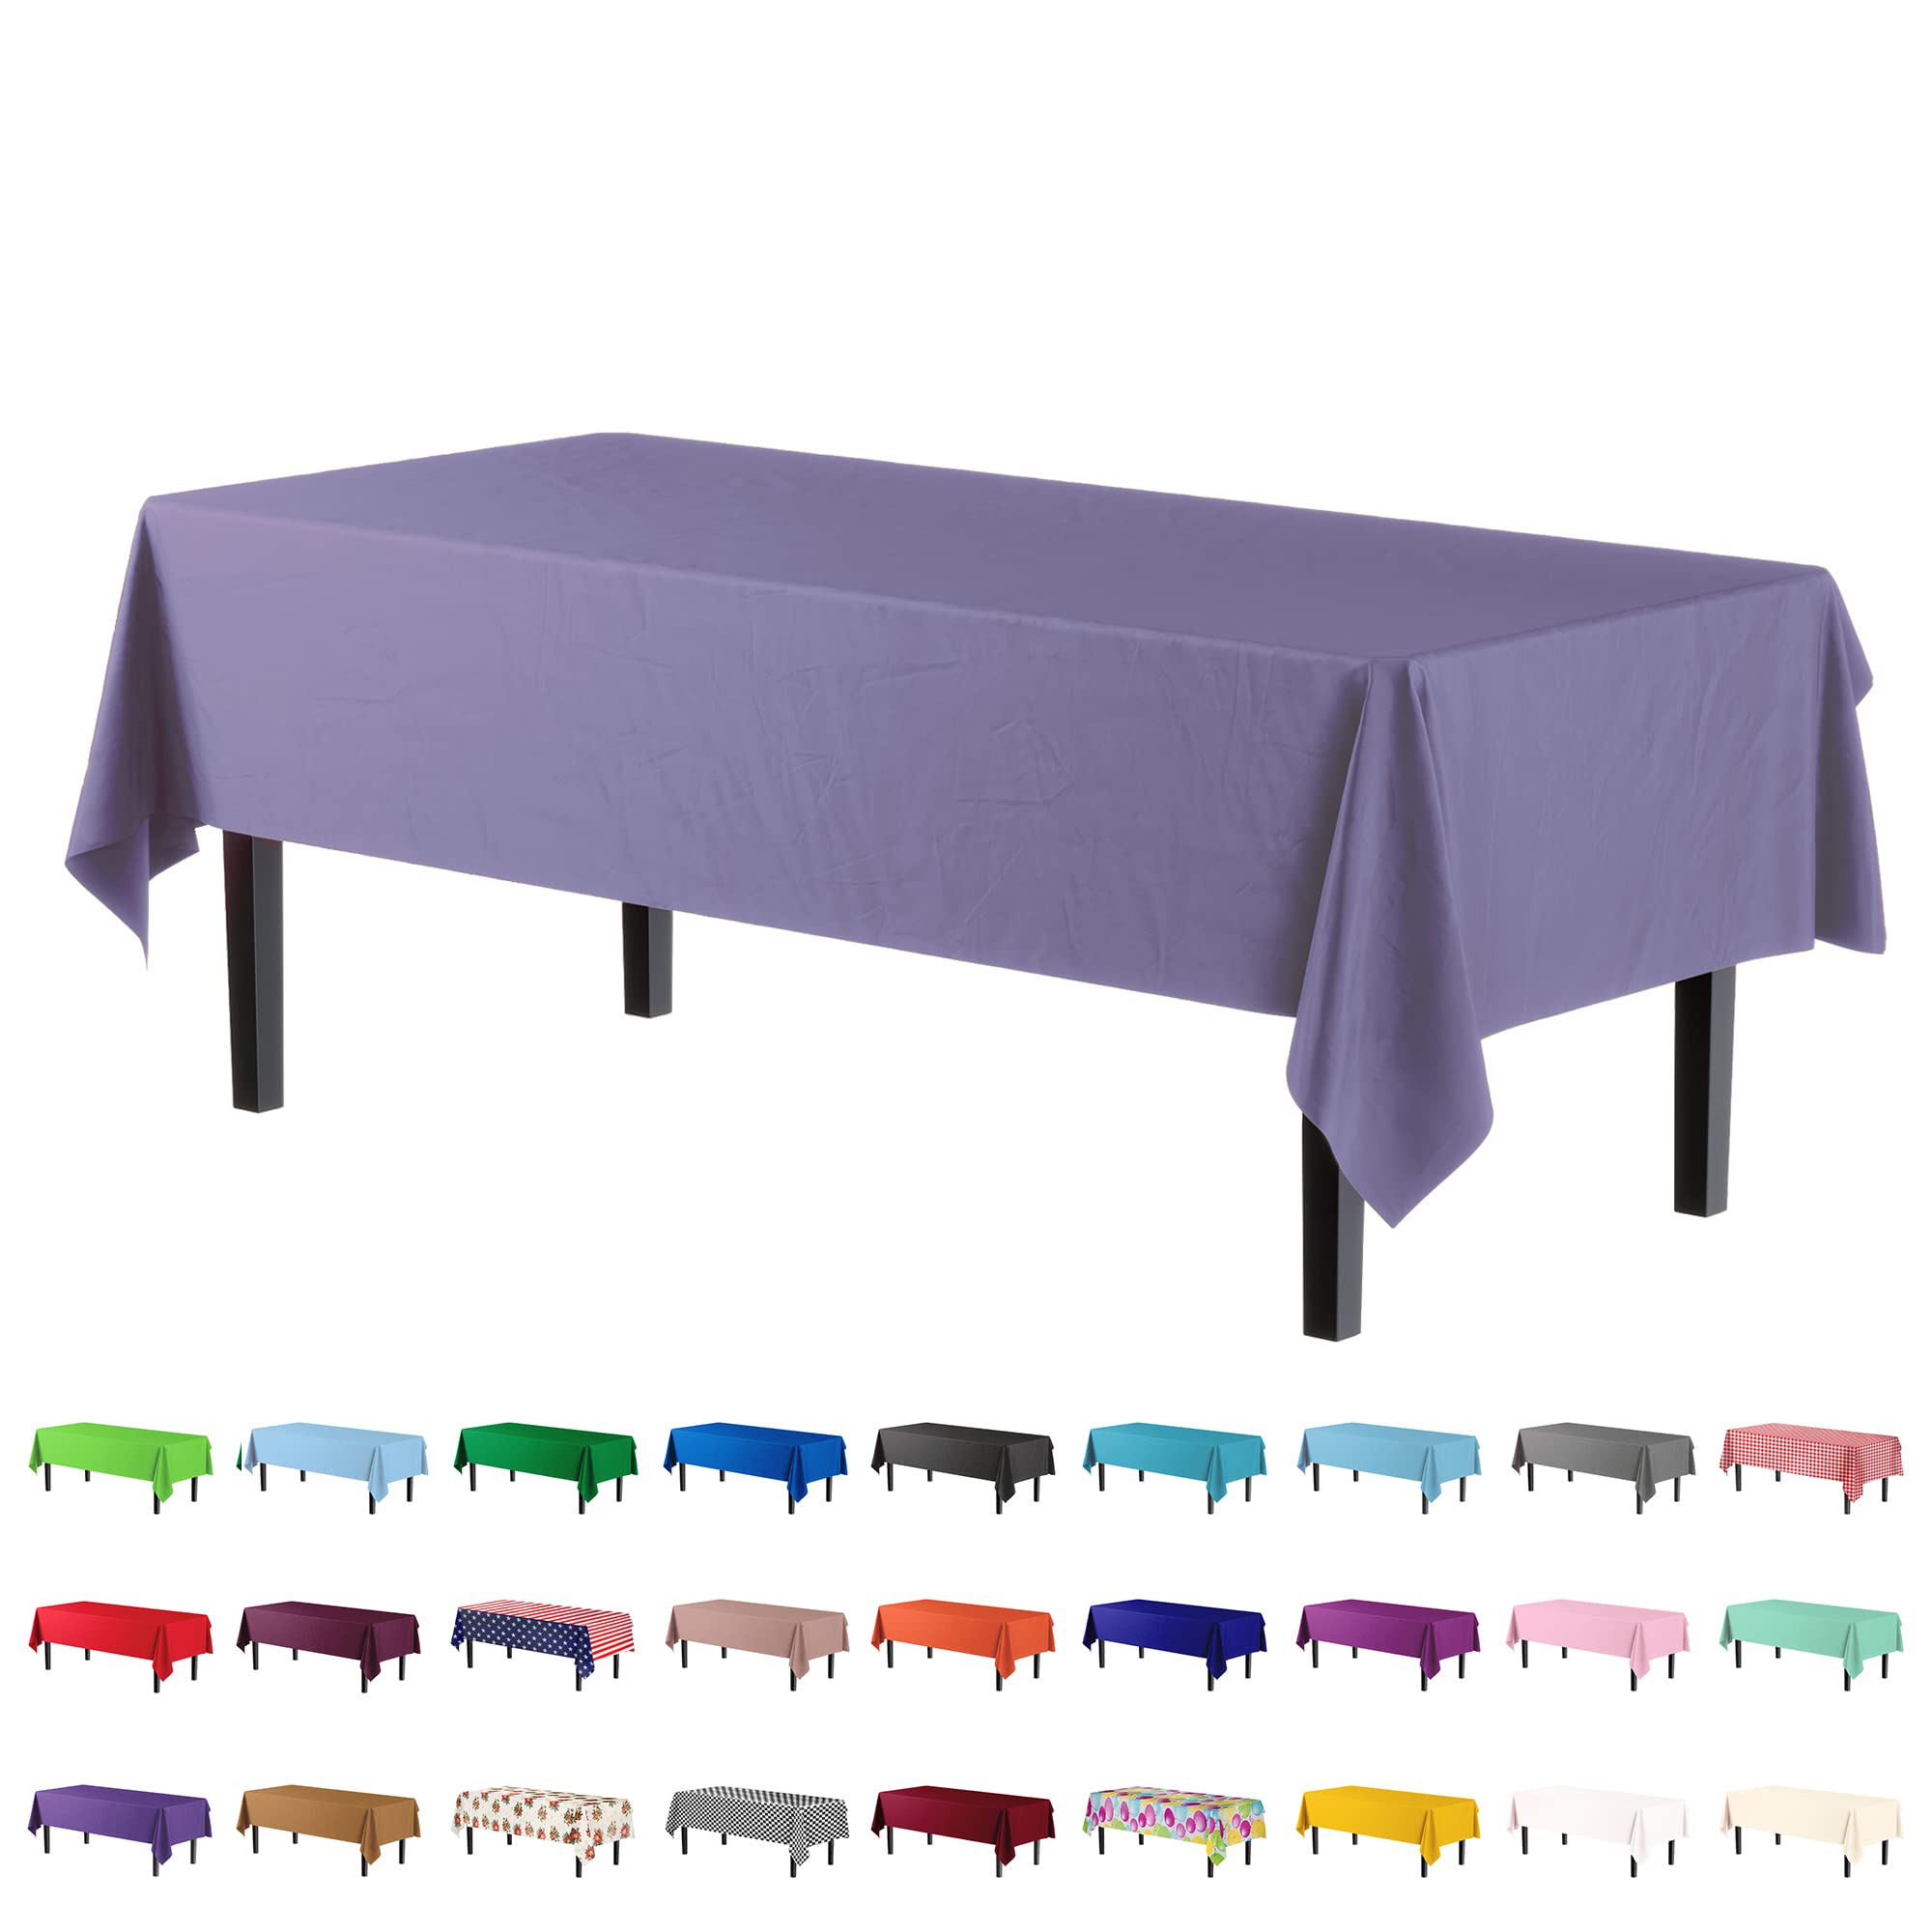 Premium Lavender Table Cover